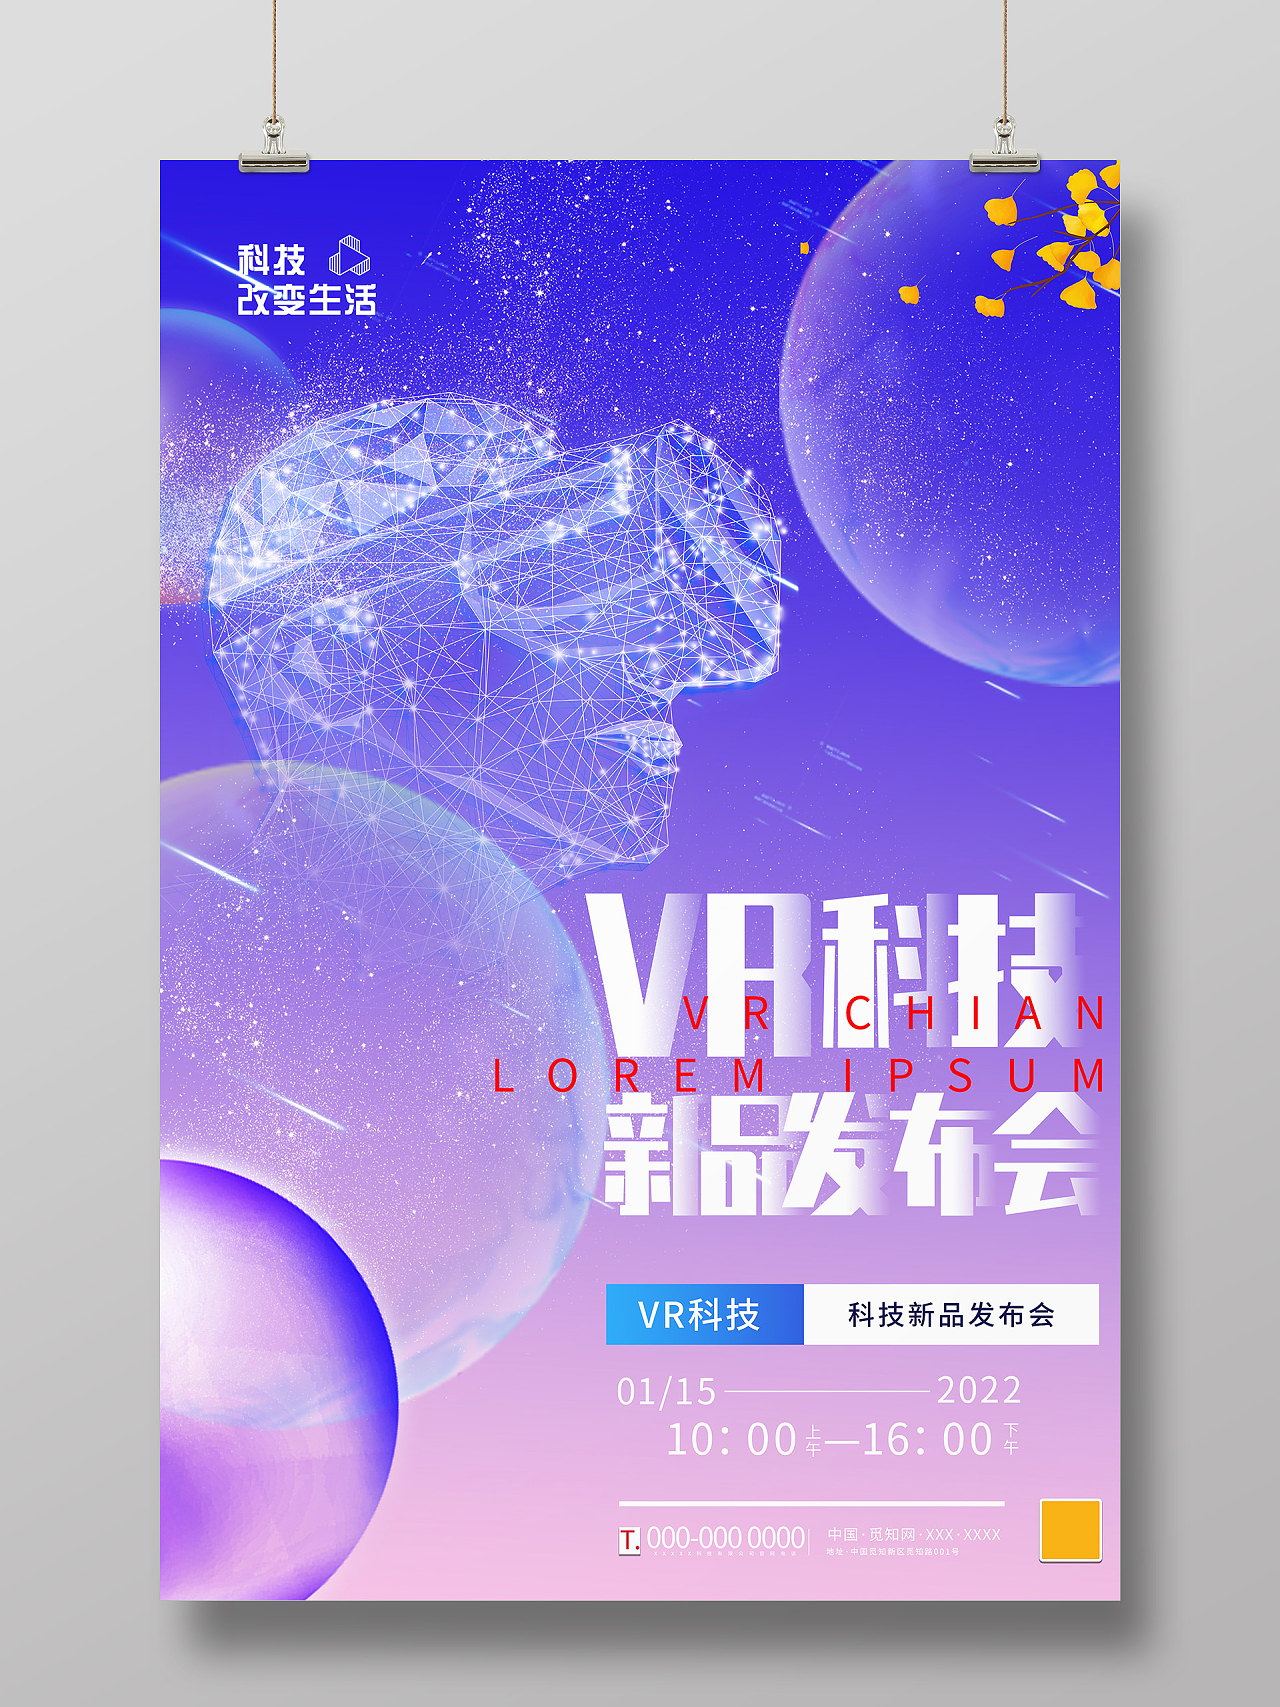 紫色大气VR科技新品发布会宣传海报vr眼镜海报